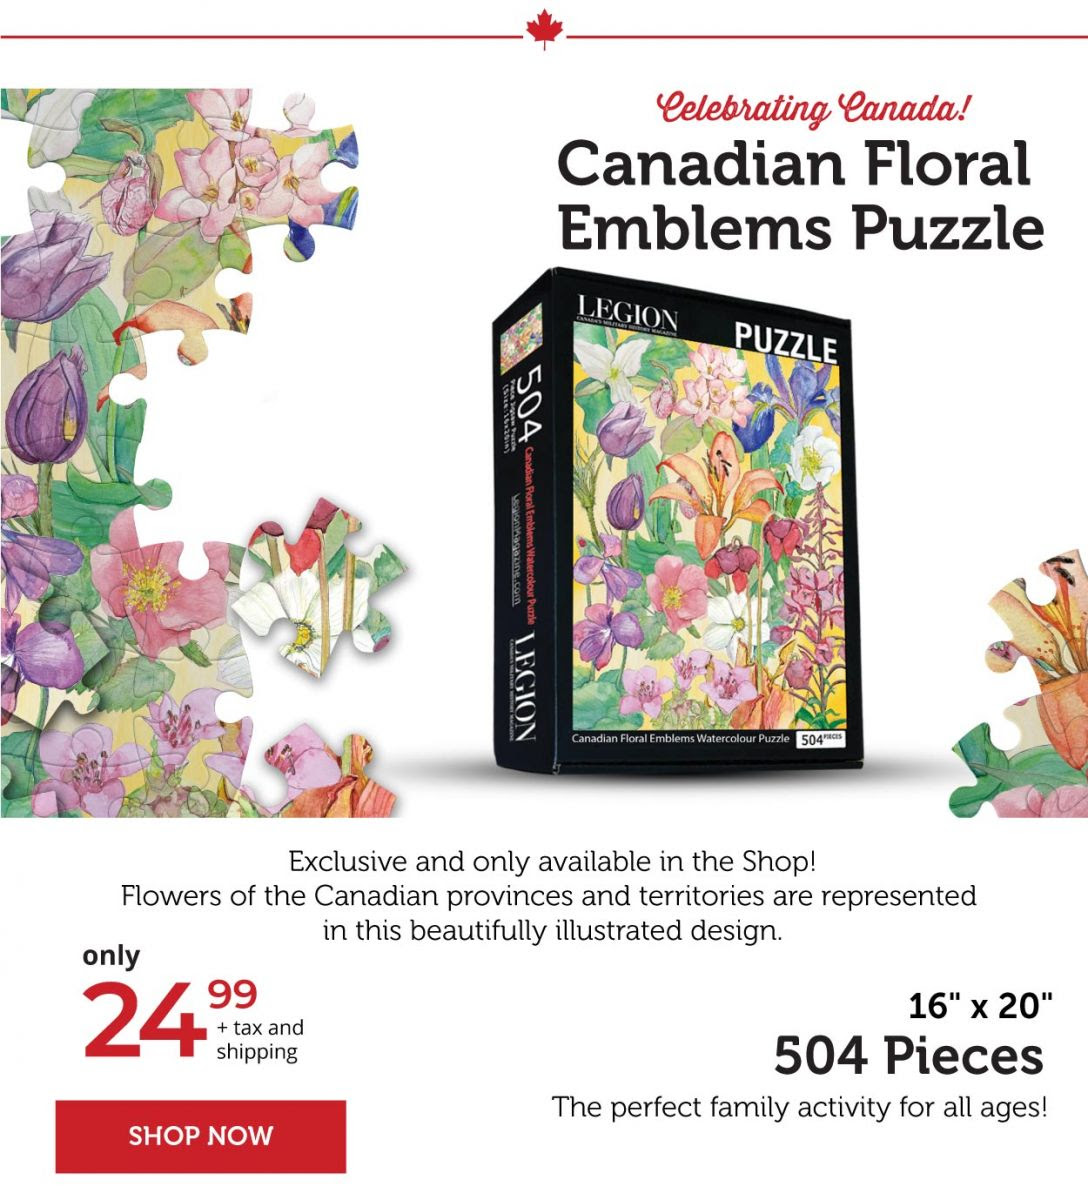 Canadian floral emblems Puzzle